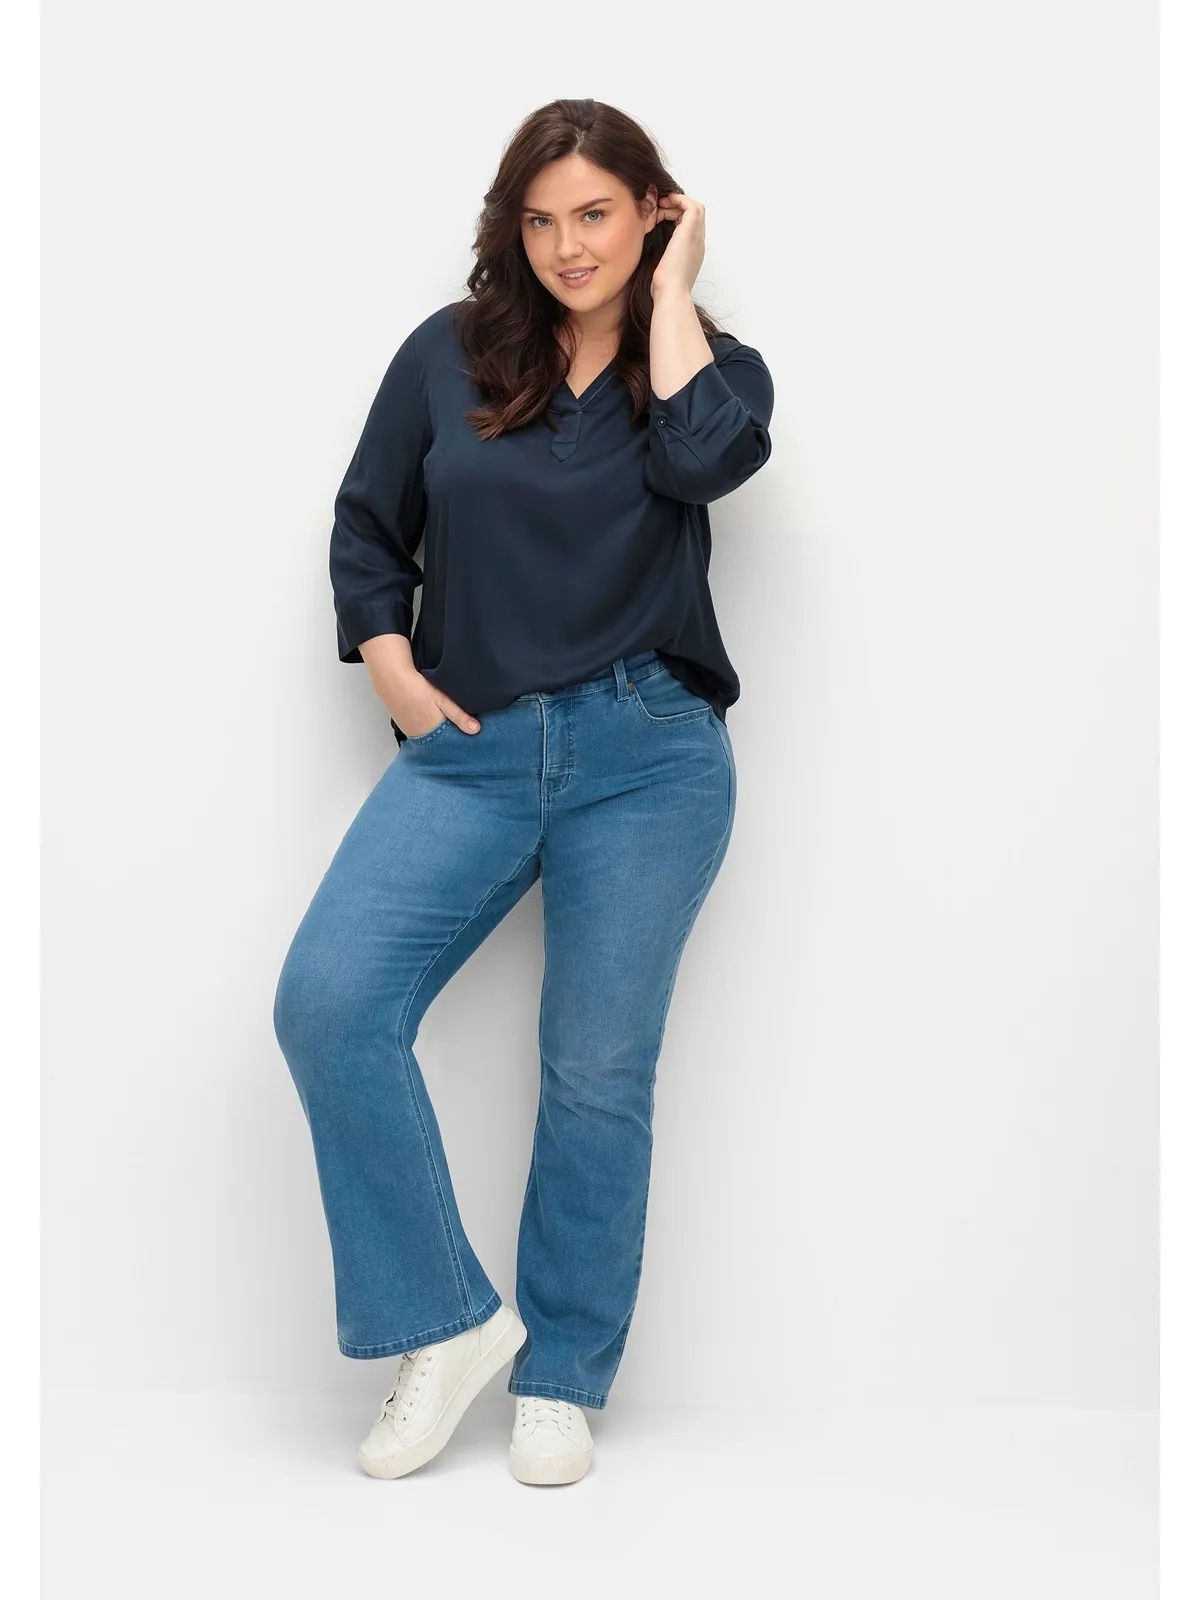 Stretch-Jeans SHEEGO "Große Größen" Gr. 46, Normalgrößen, blau (blue denim) Damen Jeans Stretch